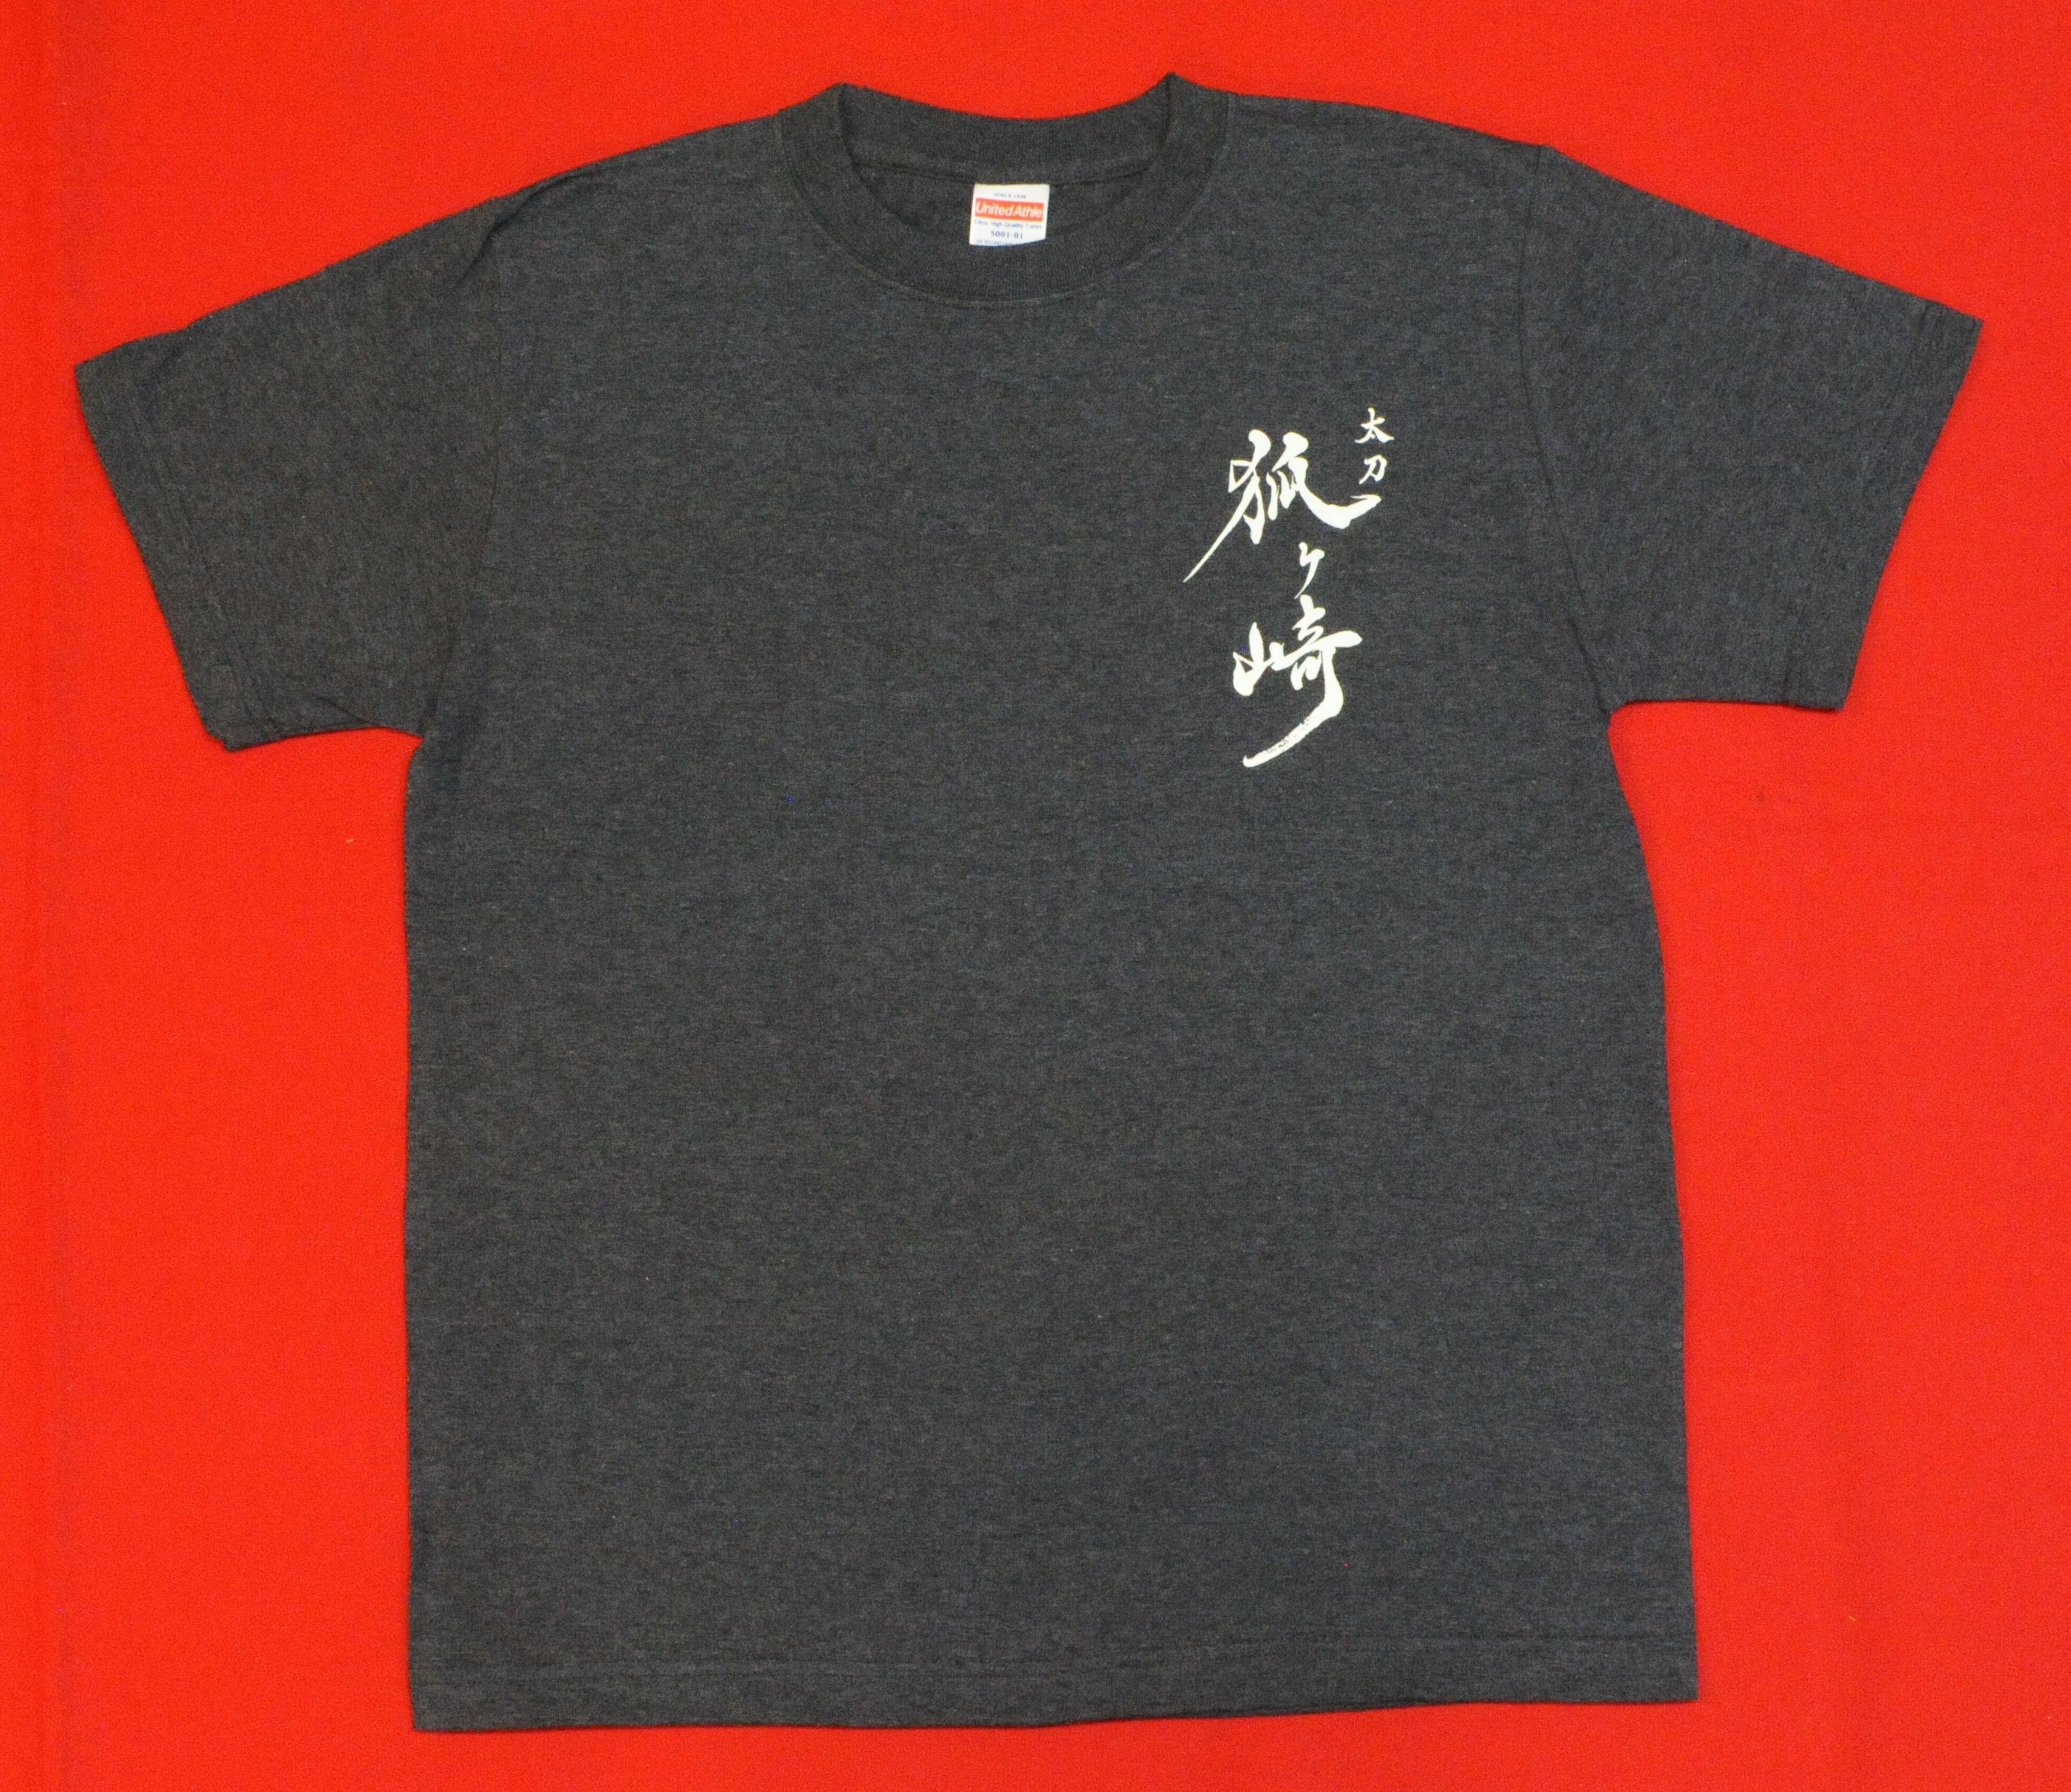 Tシャツ XLサイズ ネイビー 「太刀 狐ヶ崎」ロゴ入り 紺 XL